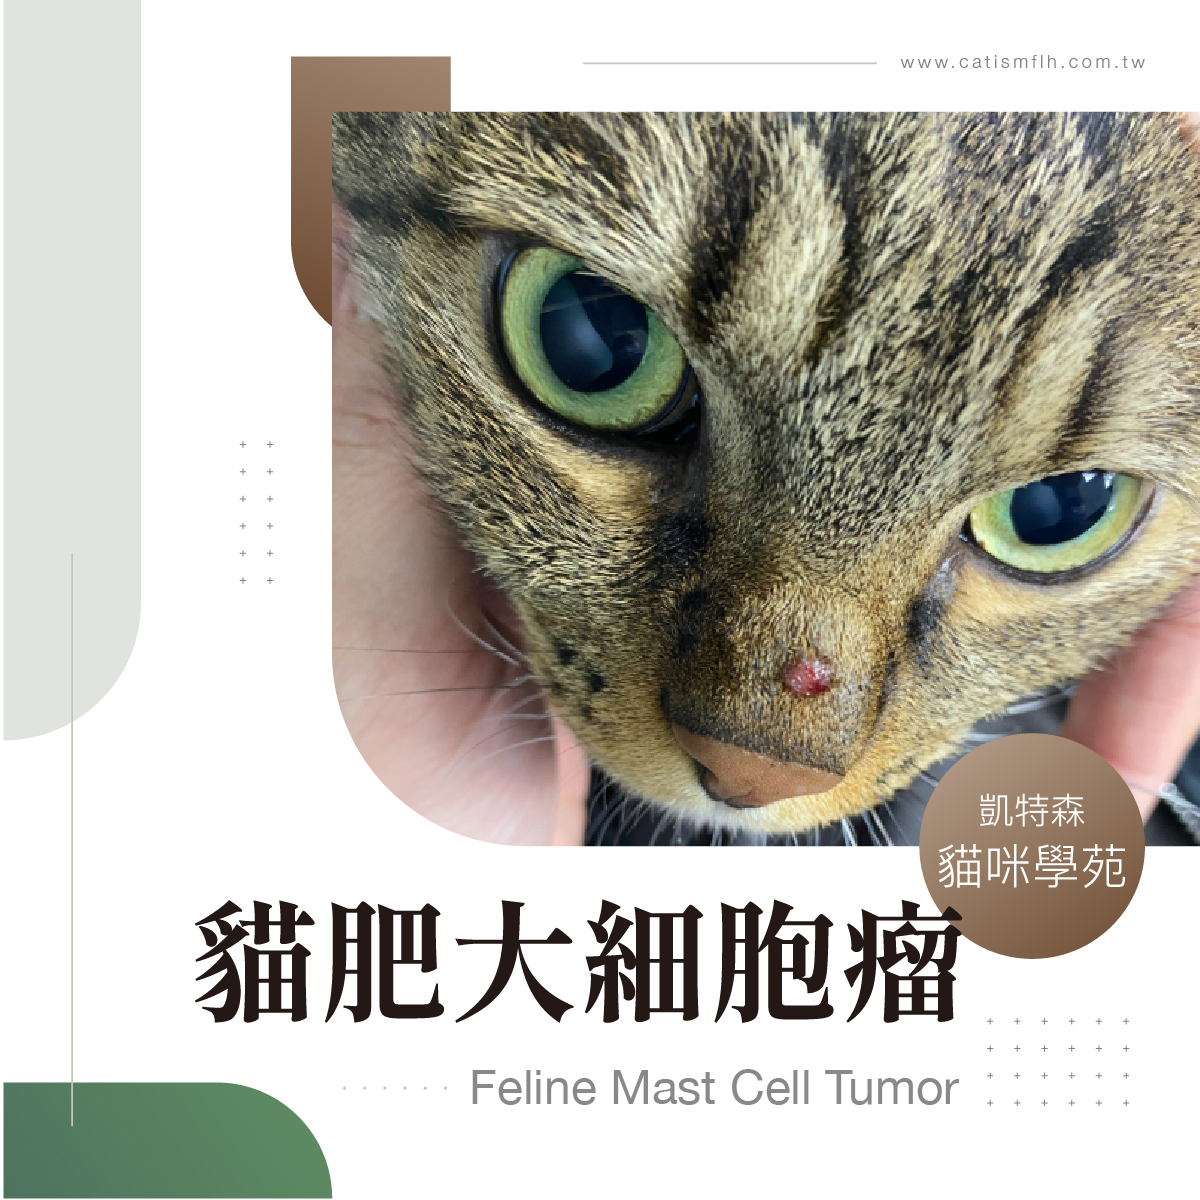 貓肥大細胞瘤 (Feline Mast Cell Tumor)